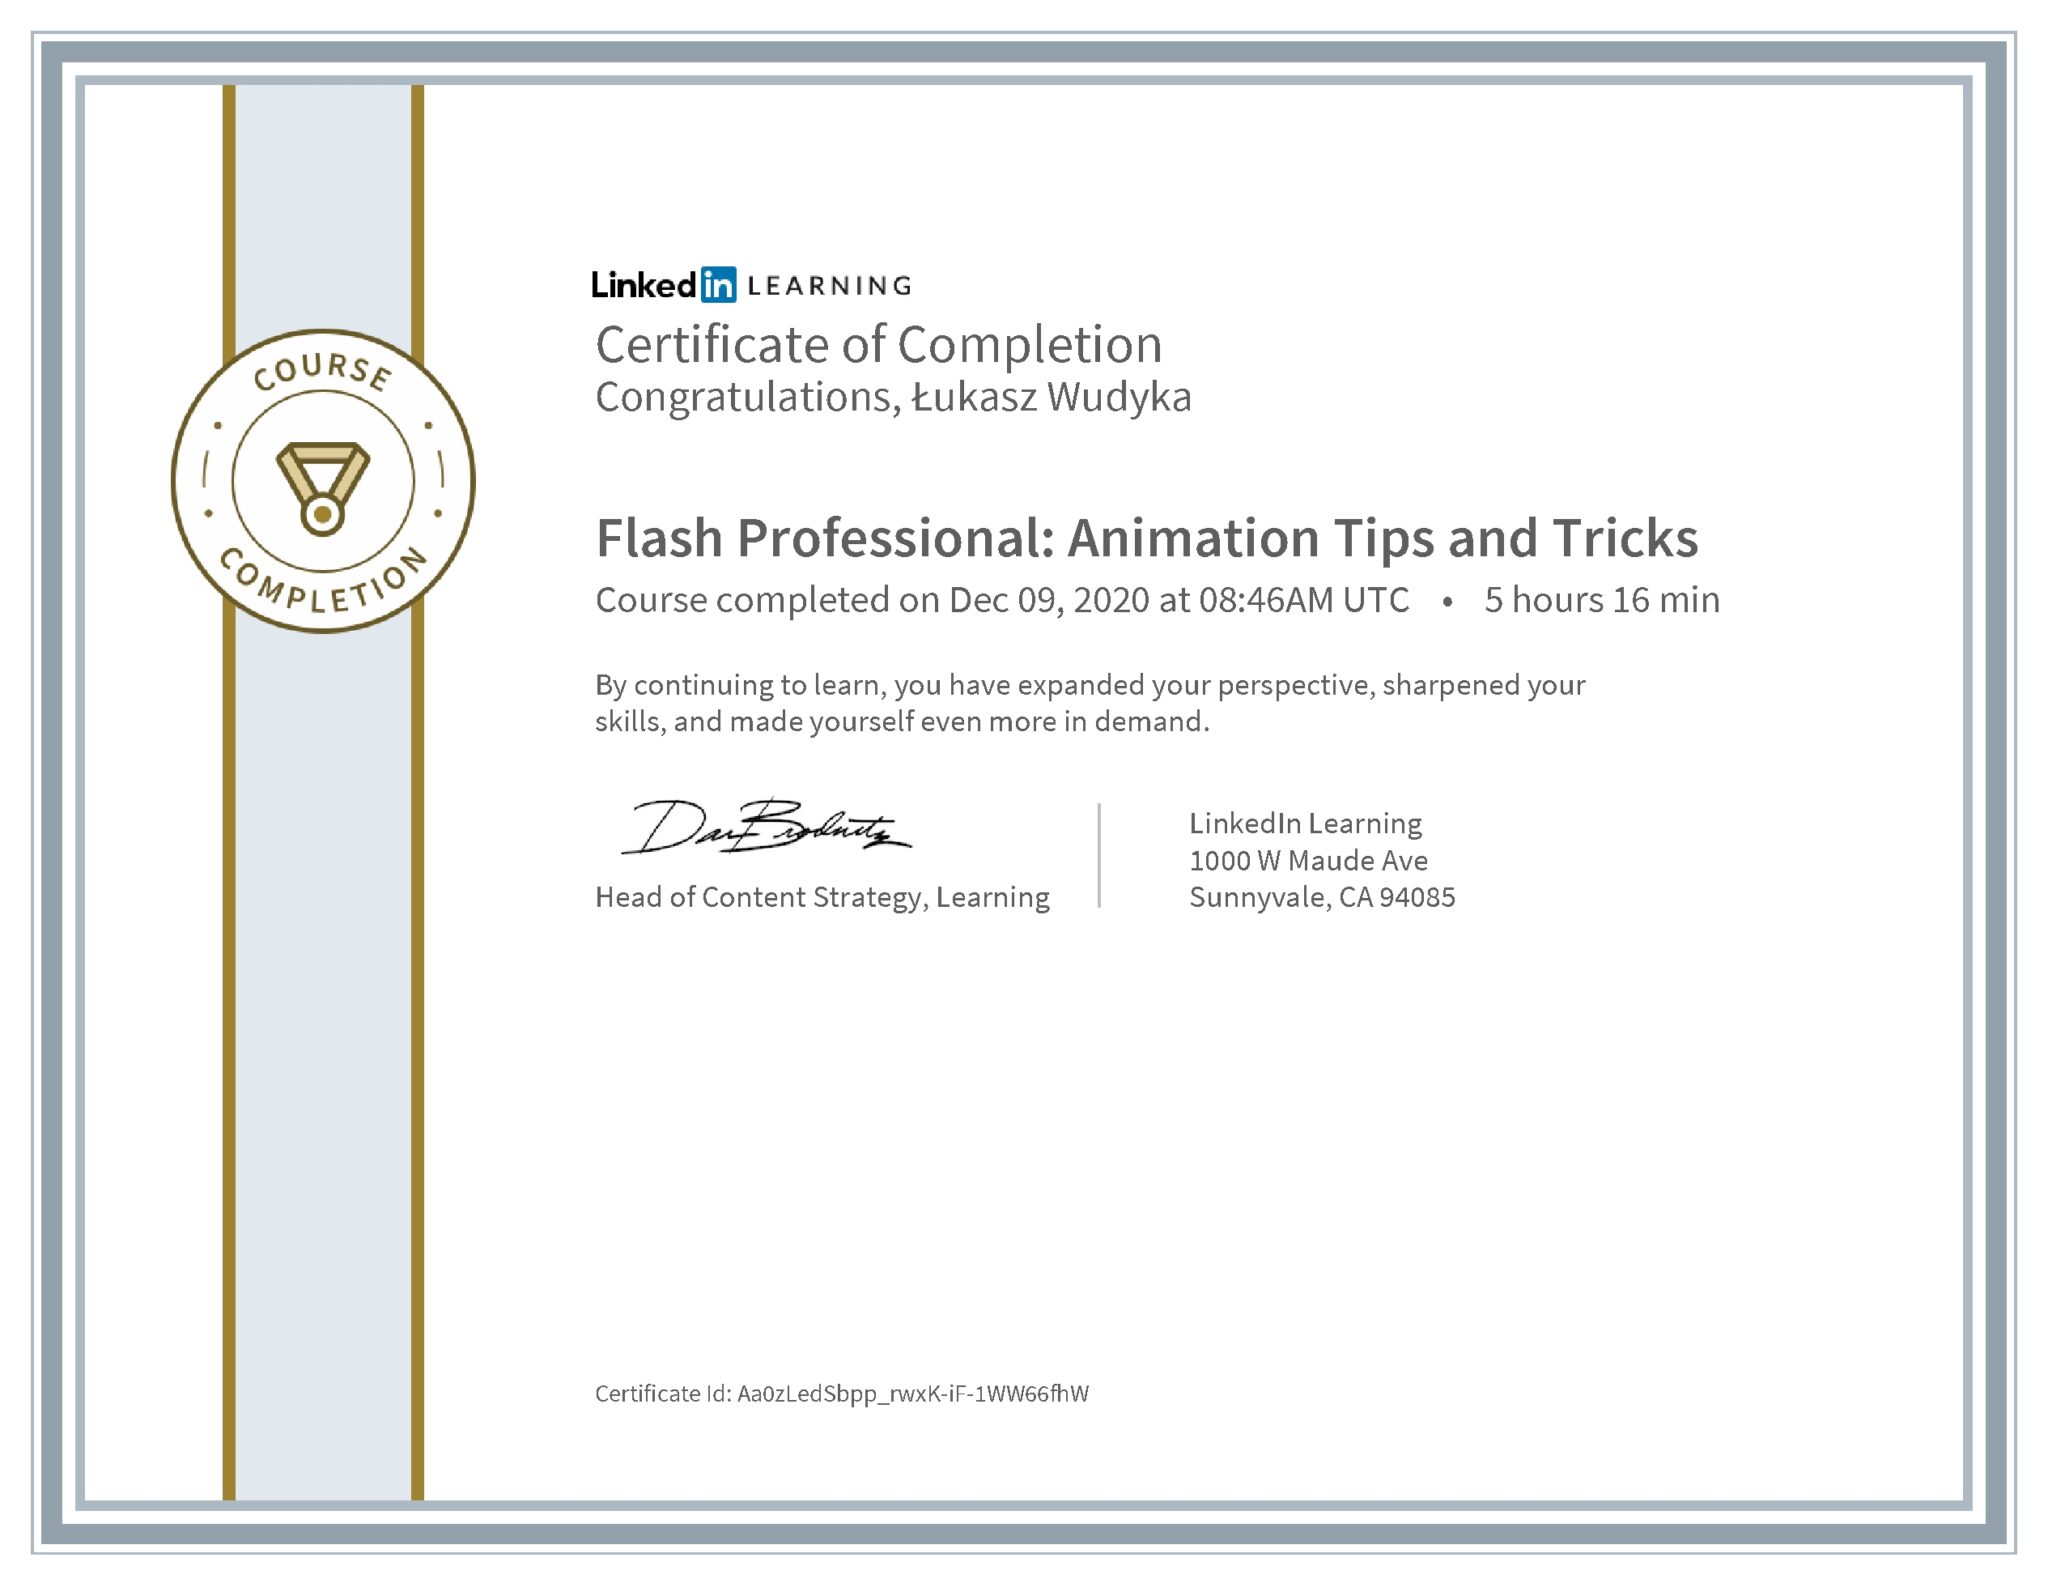 Łukasz Wudyka certyfikat LinkedIn Flash Professional: Animation Tips and Tricks